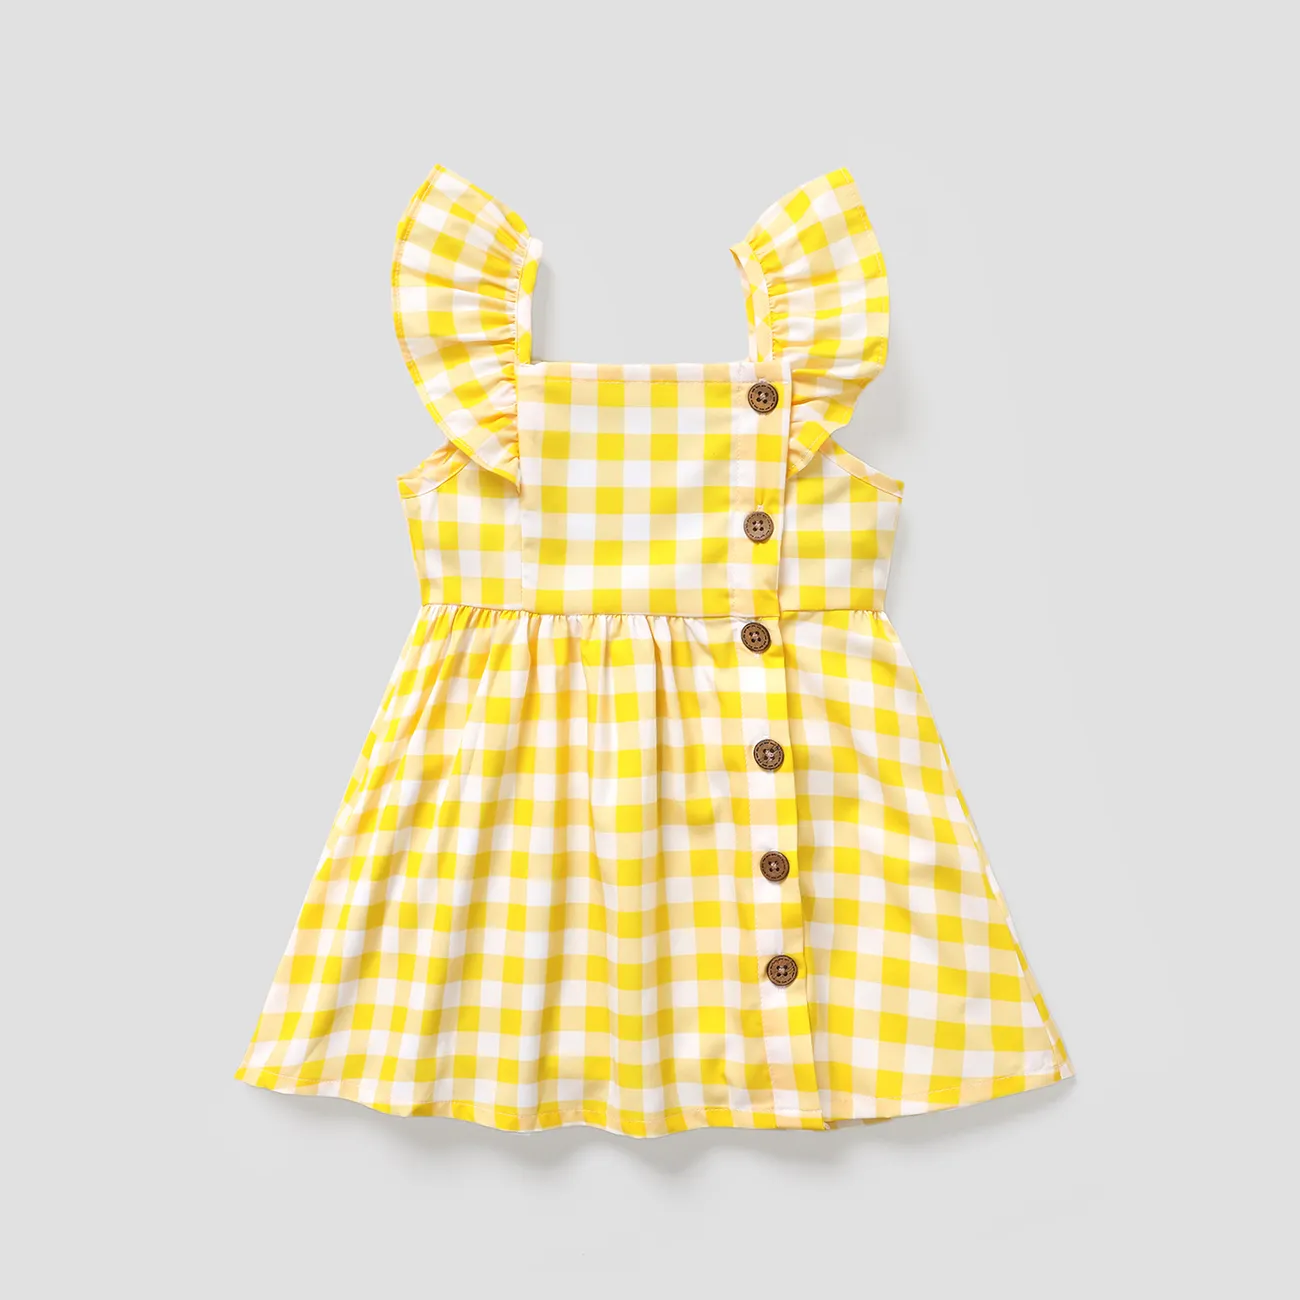 تصميم زر فتاة صغيرة بطبعة الليمون / فستان منقوش بأكمام رفرفة الأصفر big image 1